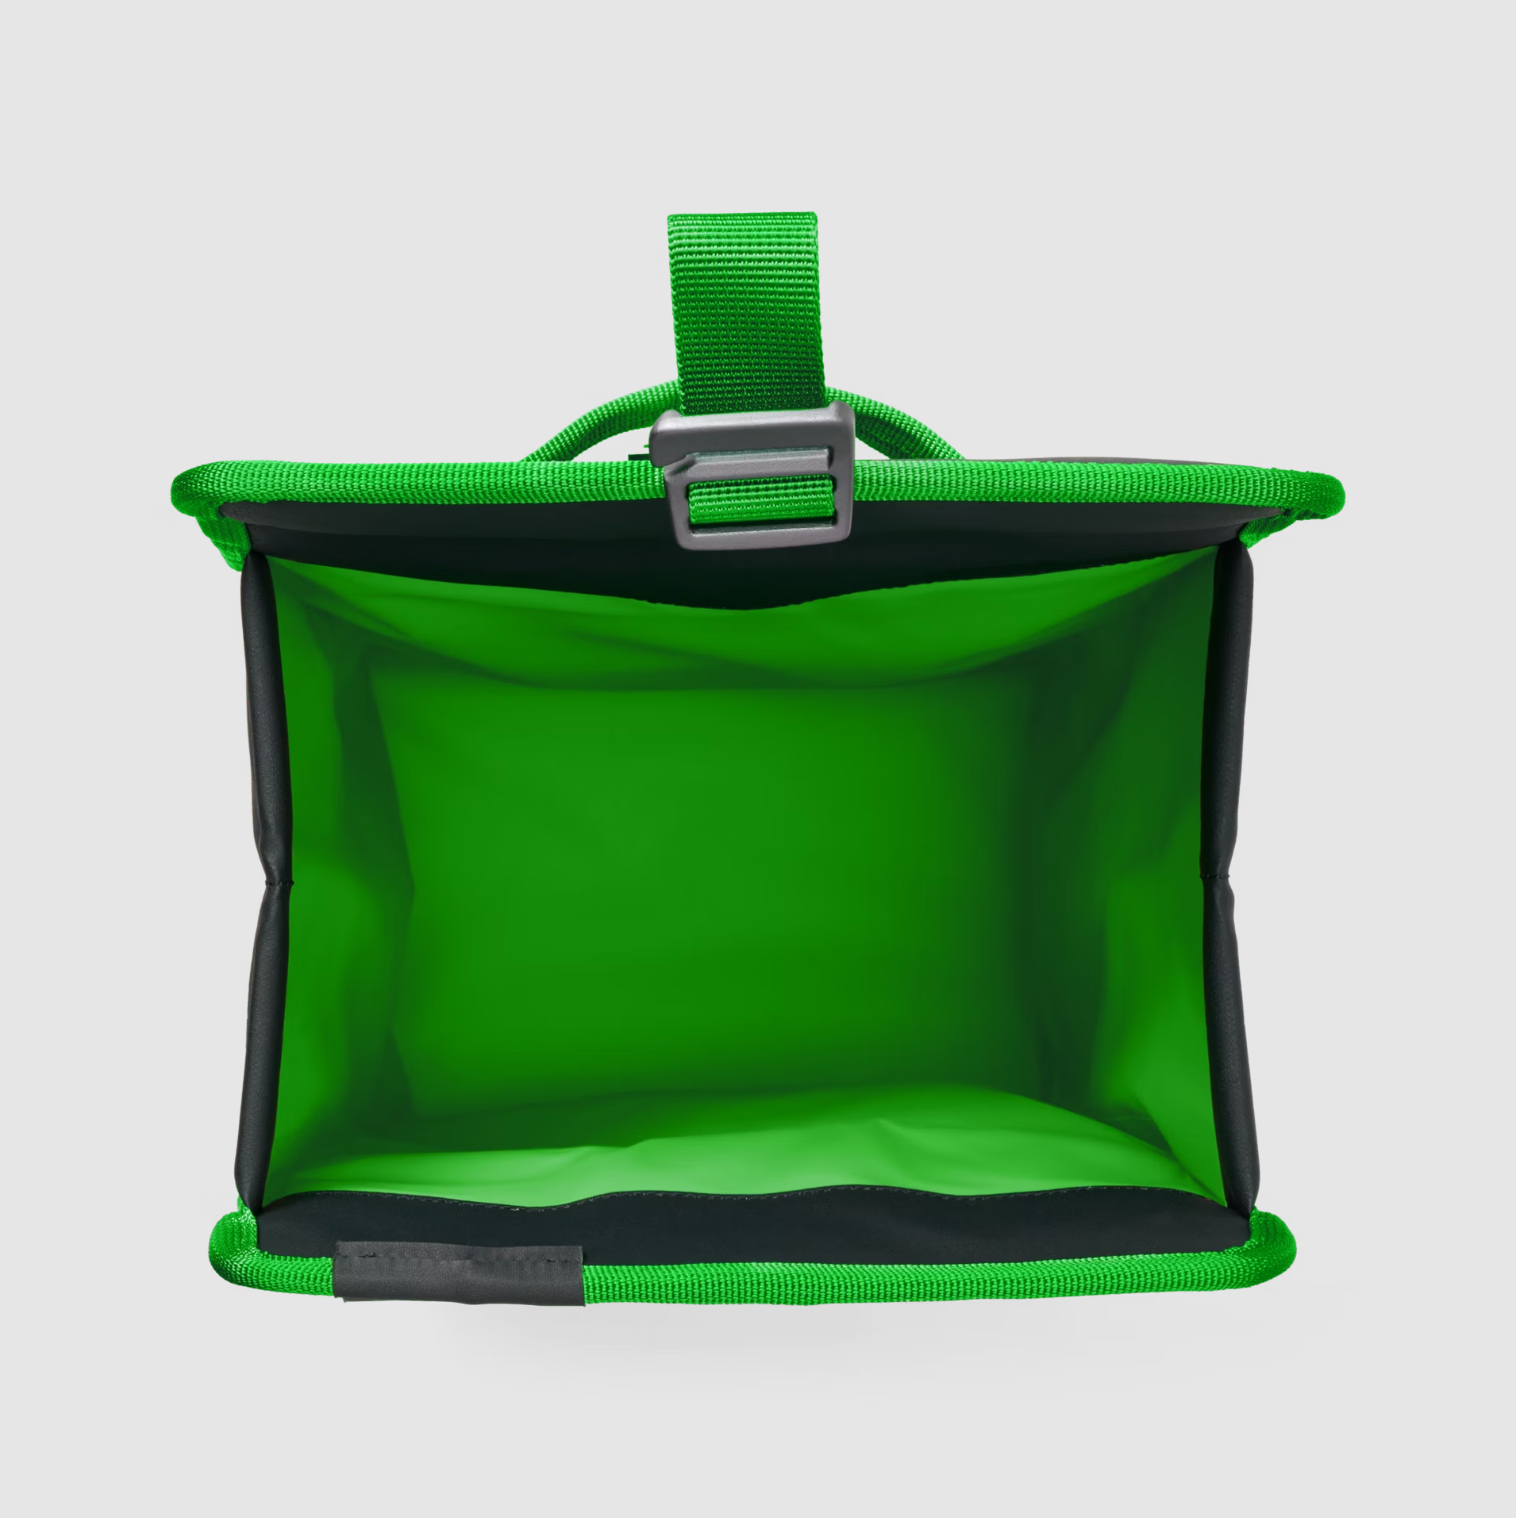 YETI - Daytrip Lunch Bag - Black / Canopy Green